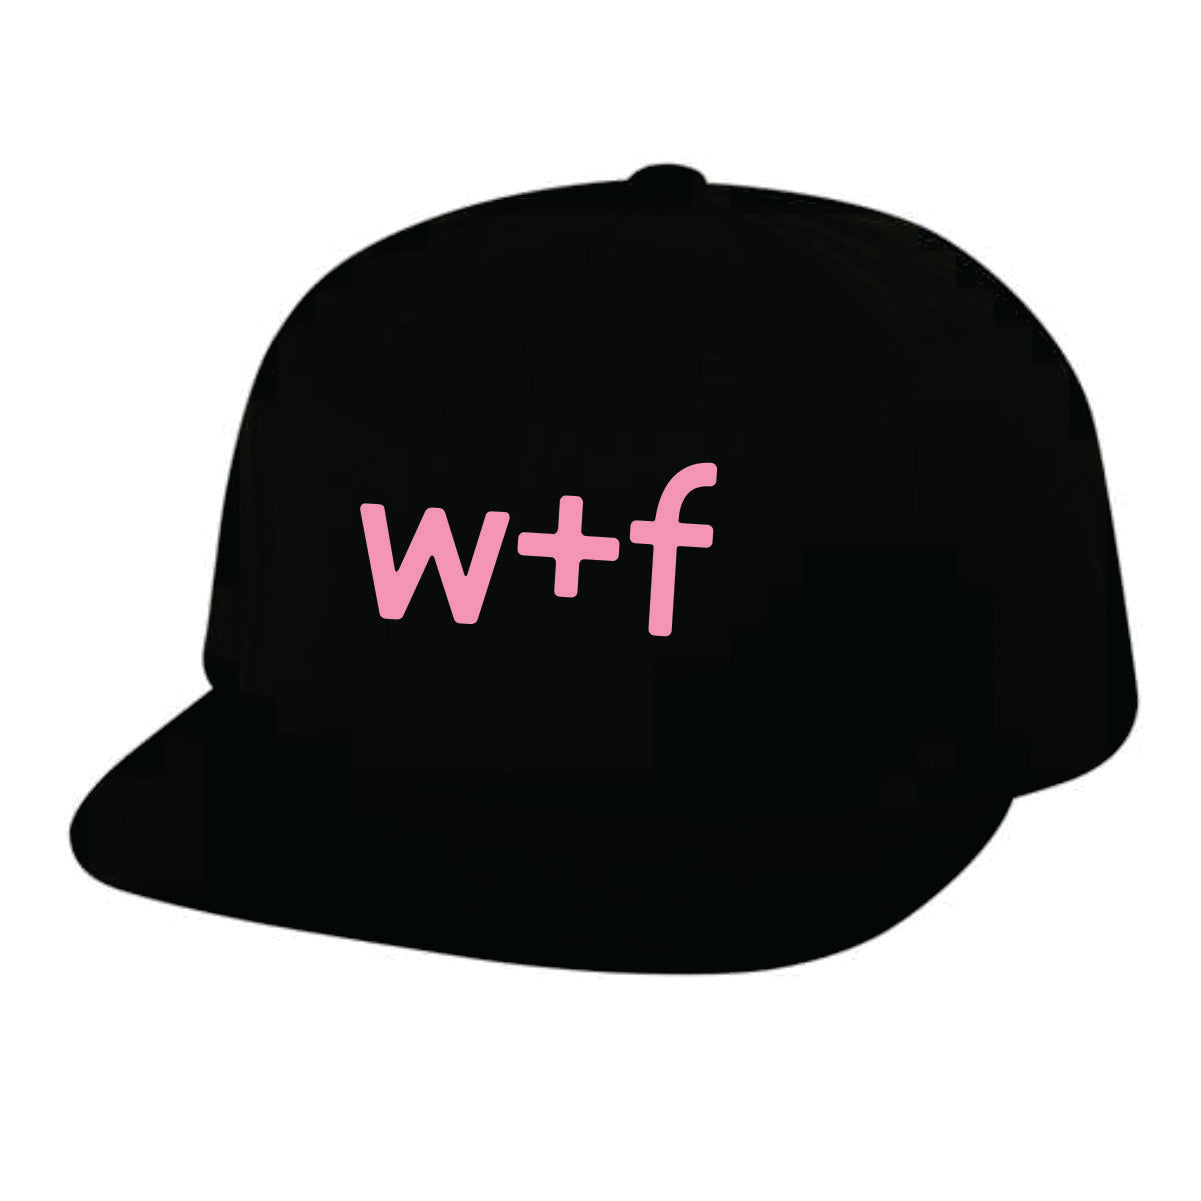 W+F Snapback Hat